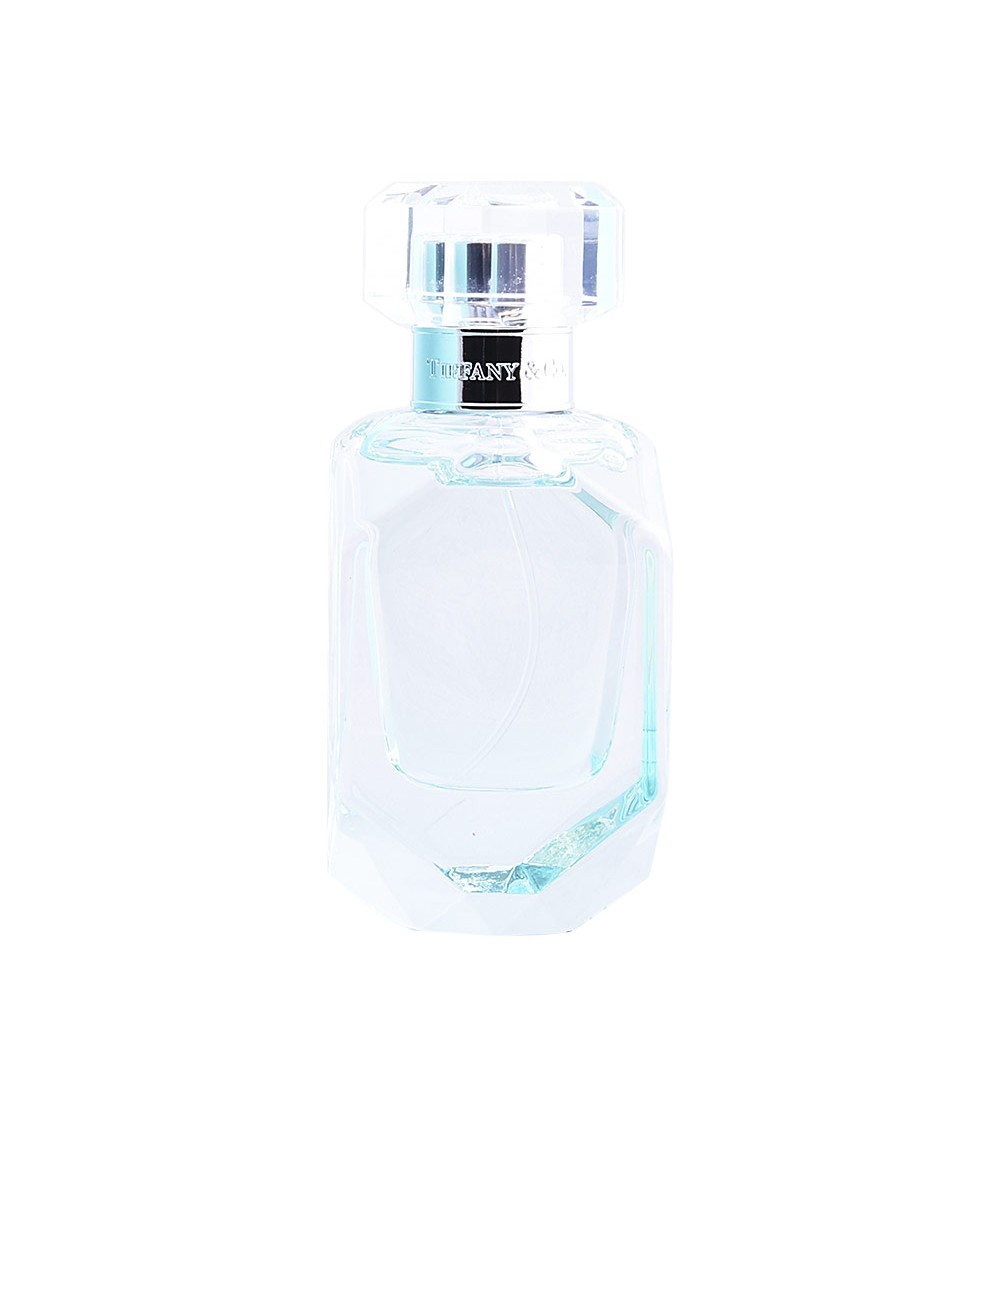 TIFFANY & CO INTENSE eau de parfum vaporisateur